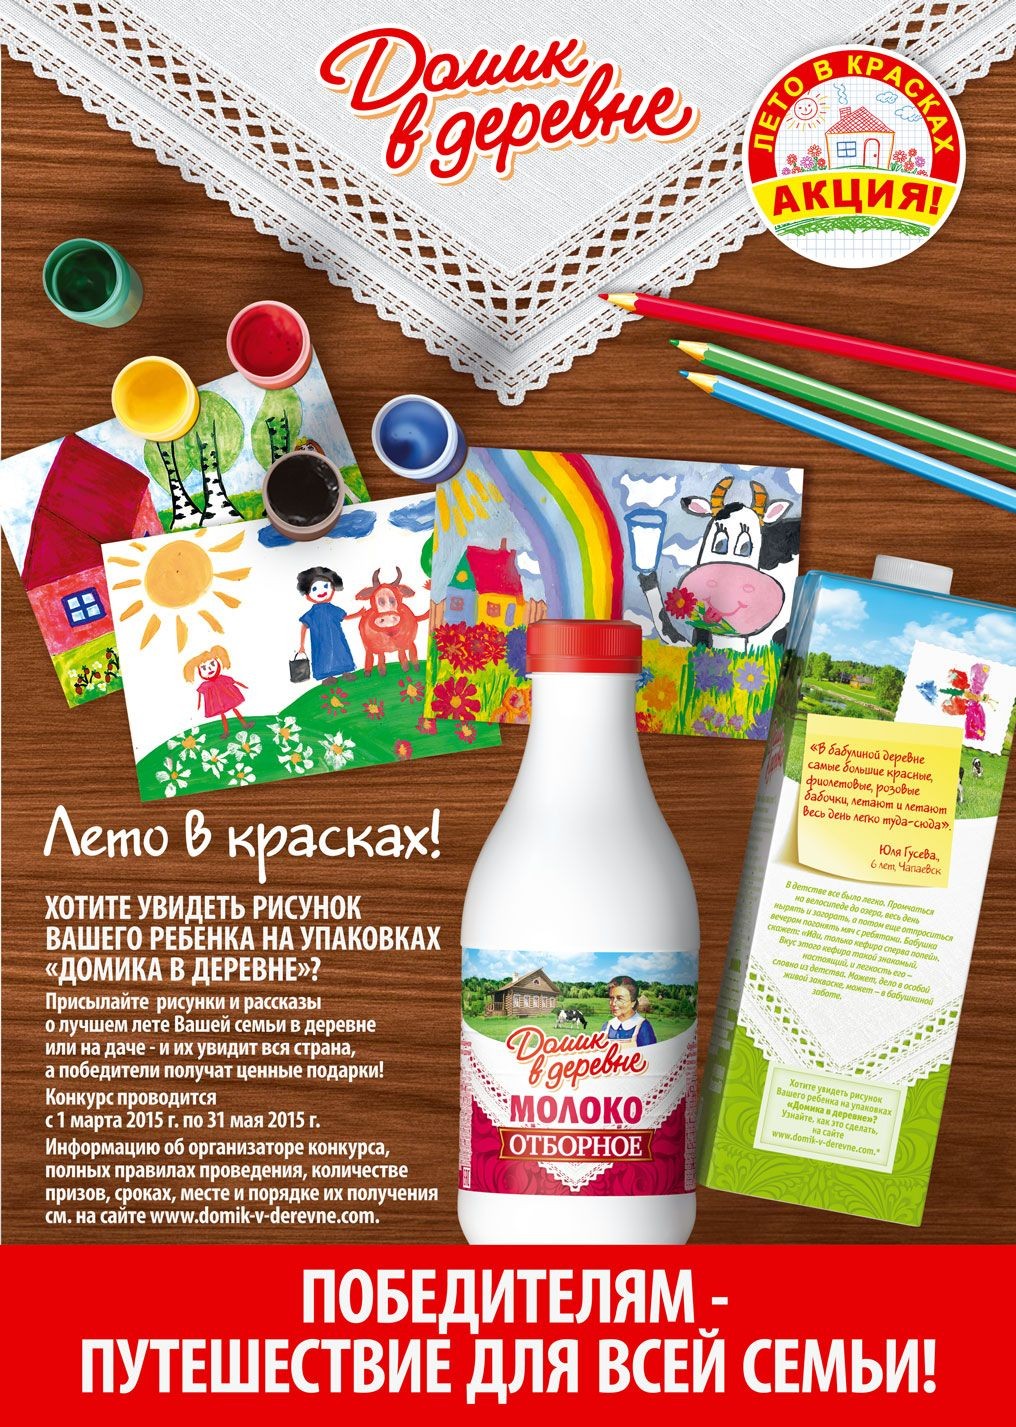 «Домик в деревне» объявляет всероссийский конкурс рисунков «Лето в красках».